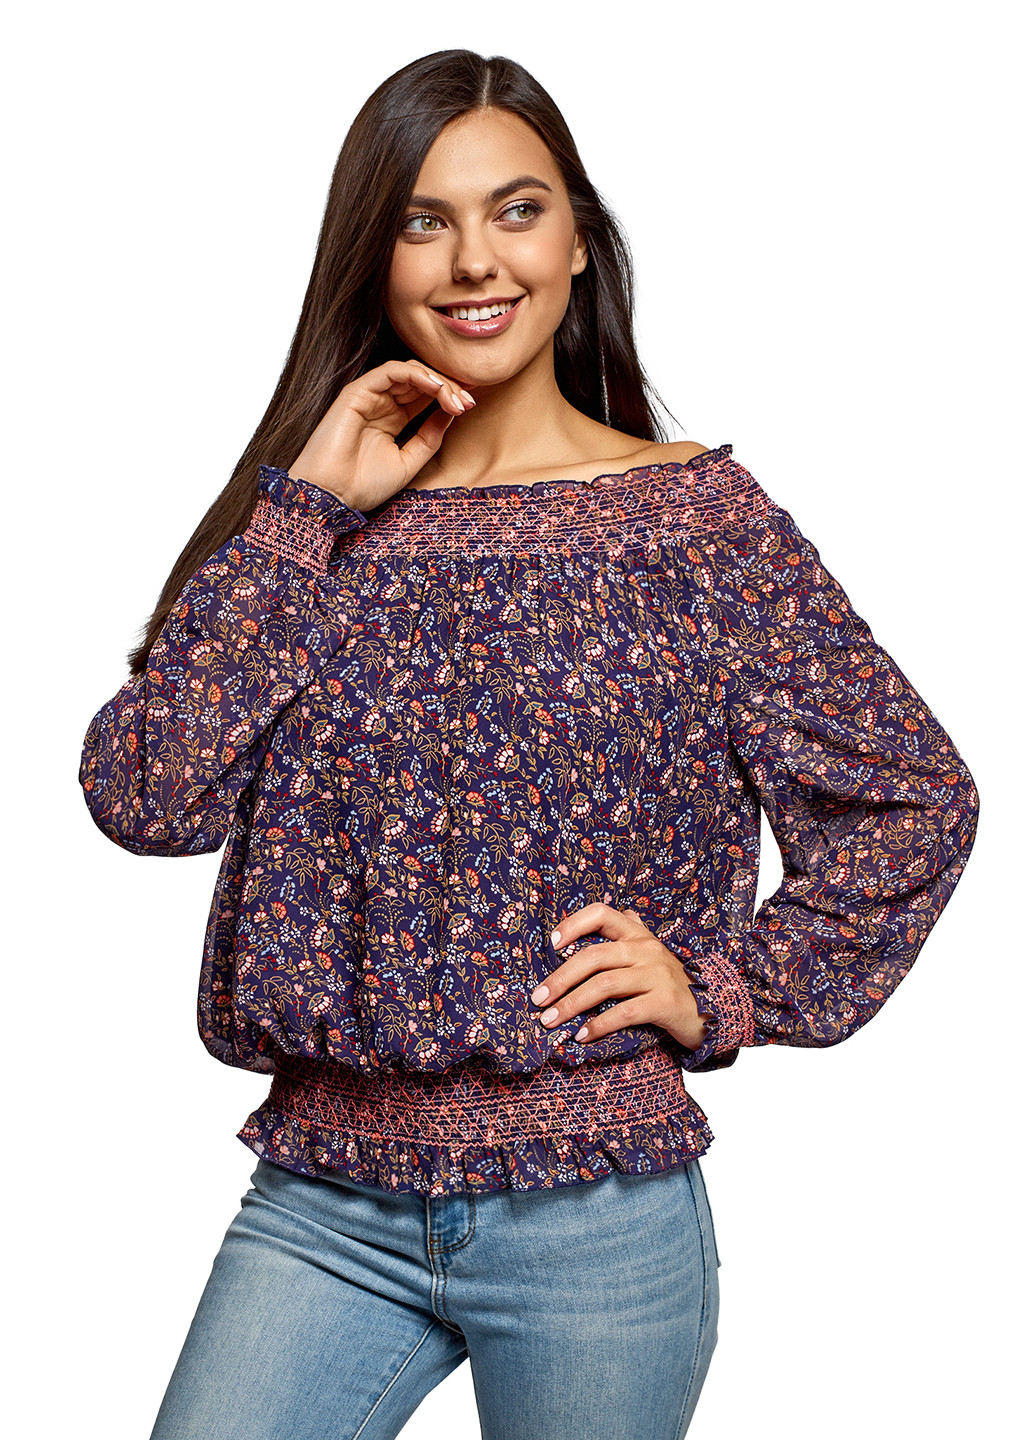 Фиолетовая демисезонная блуза Oodji